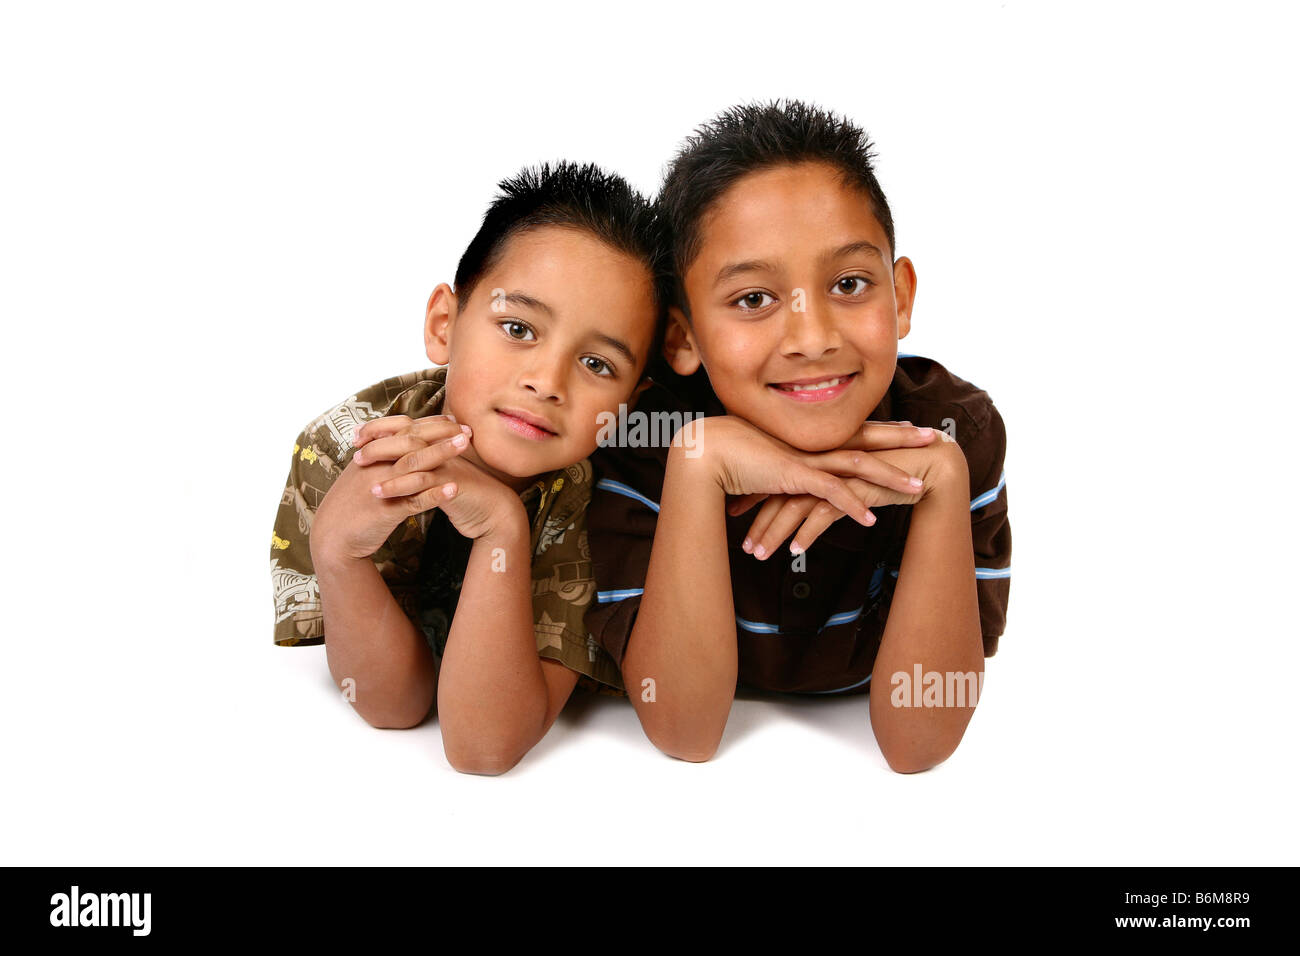 2 Happy Hispanic Boys on White Background Stock Photo